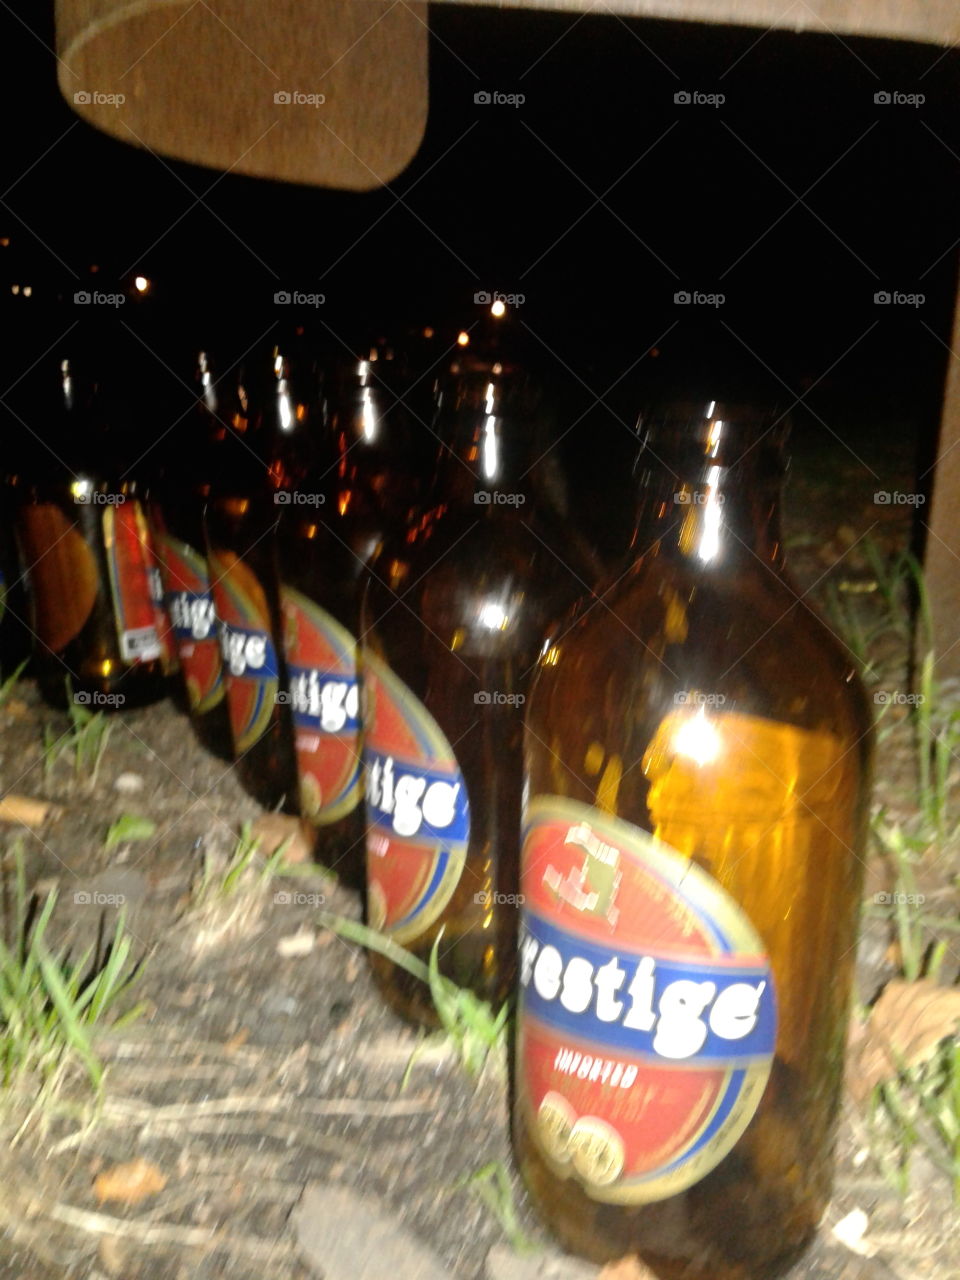 prestige the Haitian beer